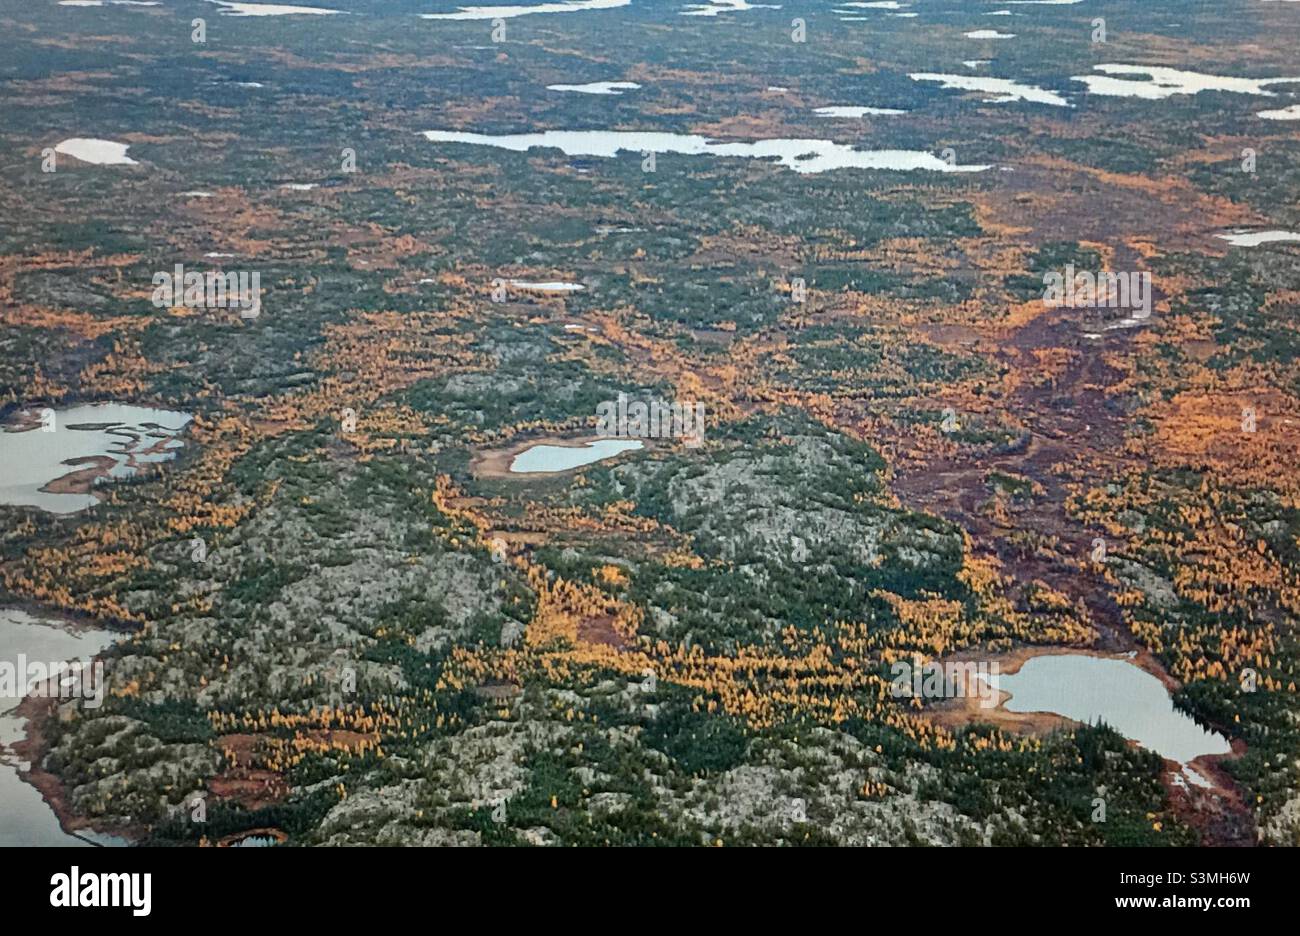 Toundra arctique canadienne, photographie aérienne, photographie, toundra, Nunavut,Canada, automne, vieux, septembre, tamaraks,nature sauvage, forêt, lacs, arbustes Banque D'Images